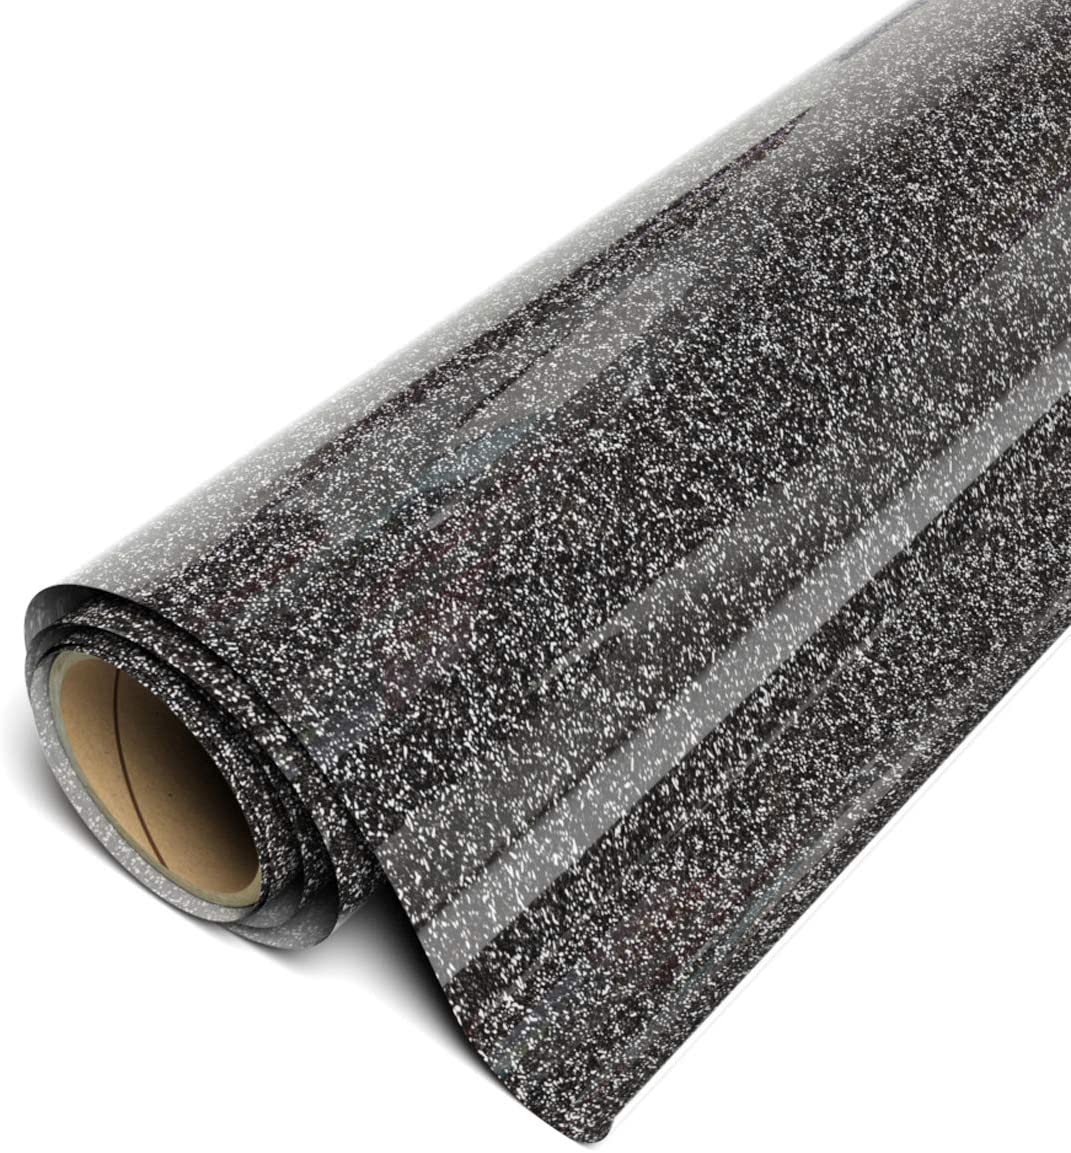 SISER Vinil Textil easyweed Glitter Negro 30x30 cms